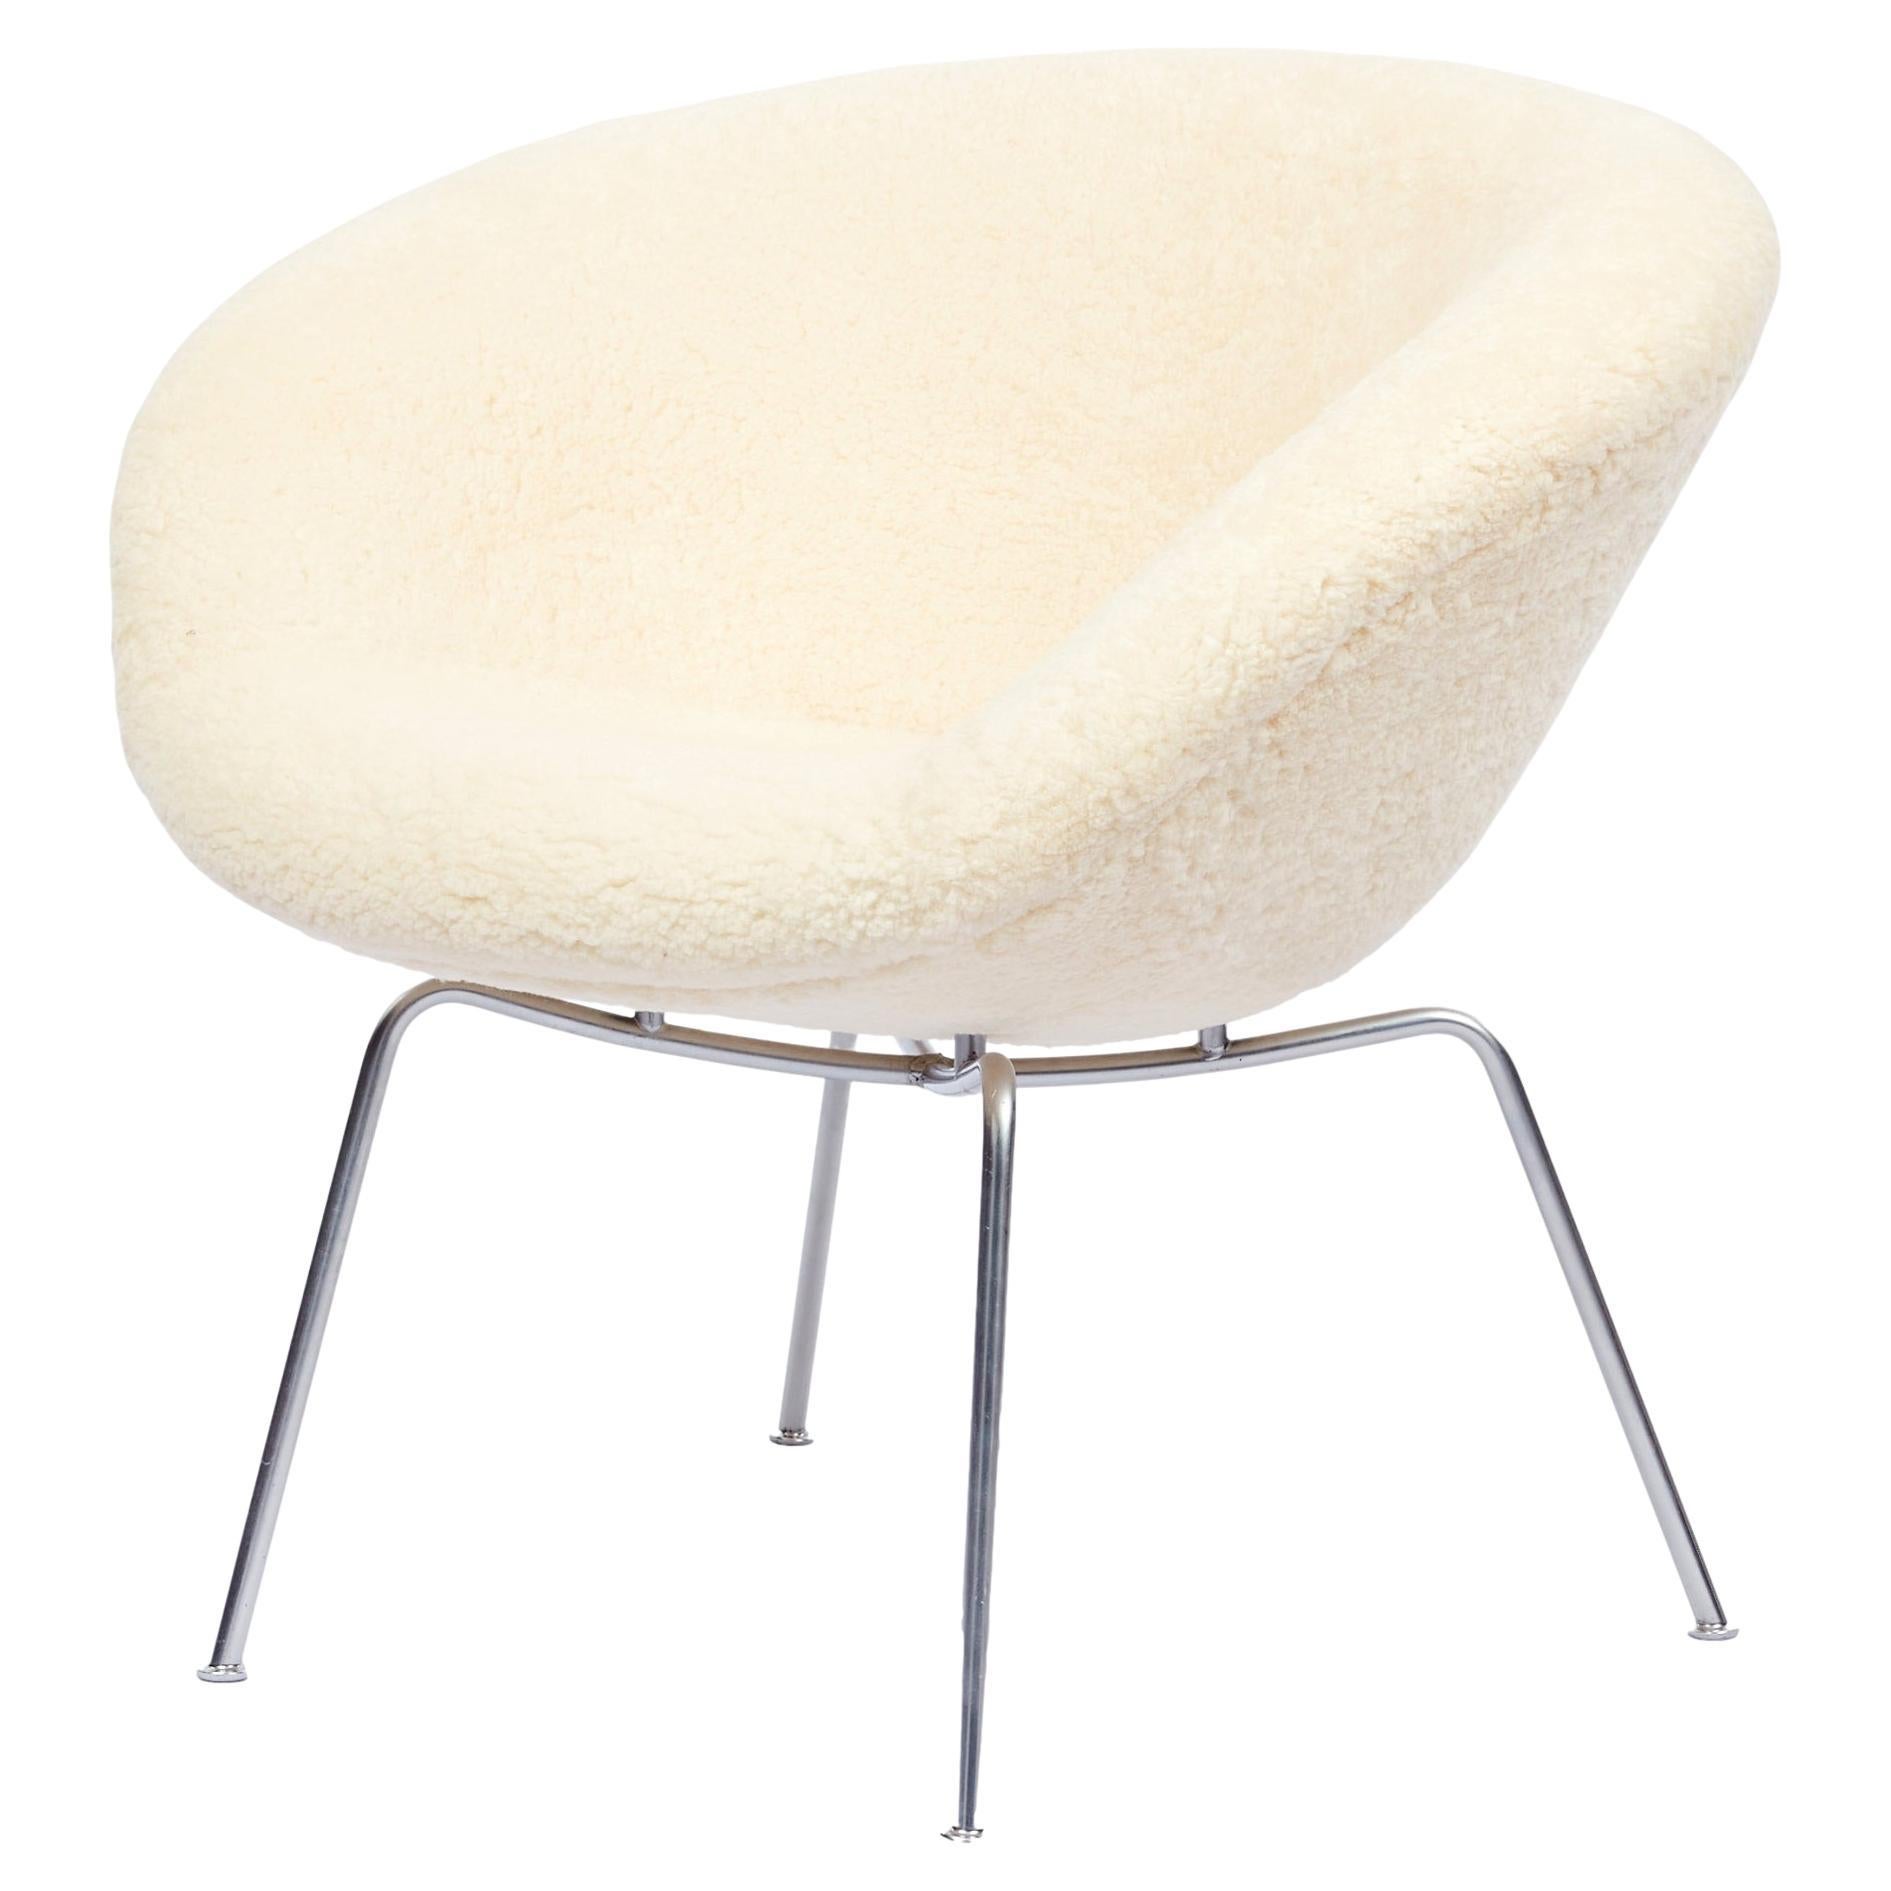 Chaise Pot d'Arne Jacobsen tapissée de peau de mouton